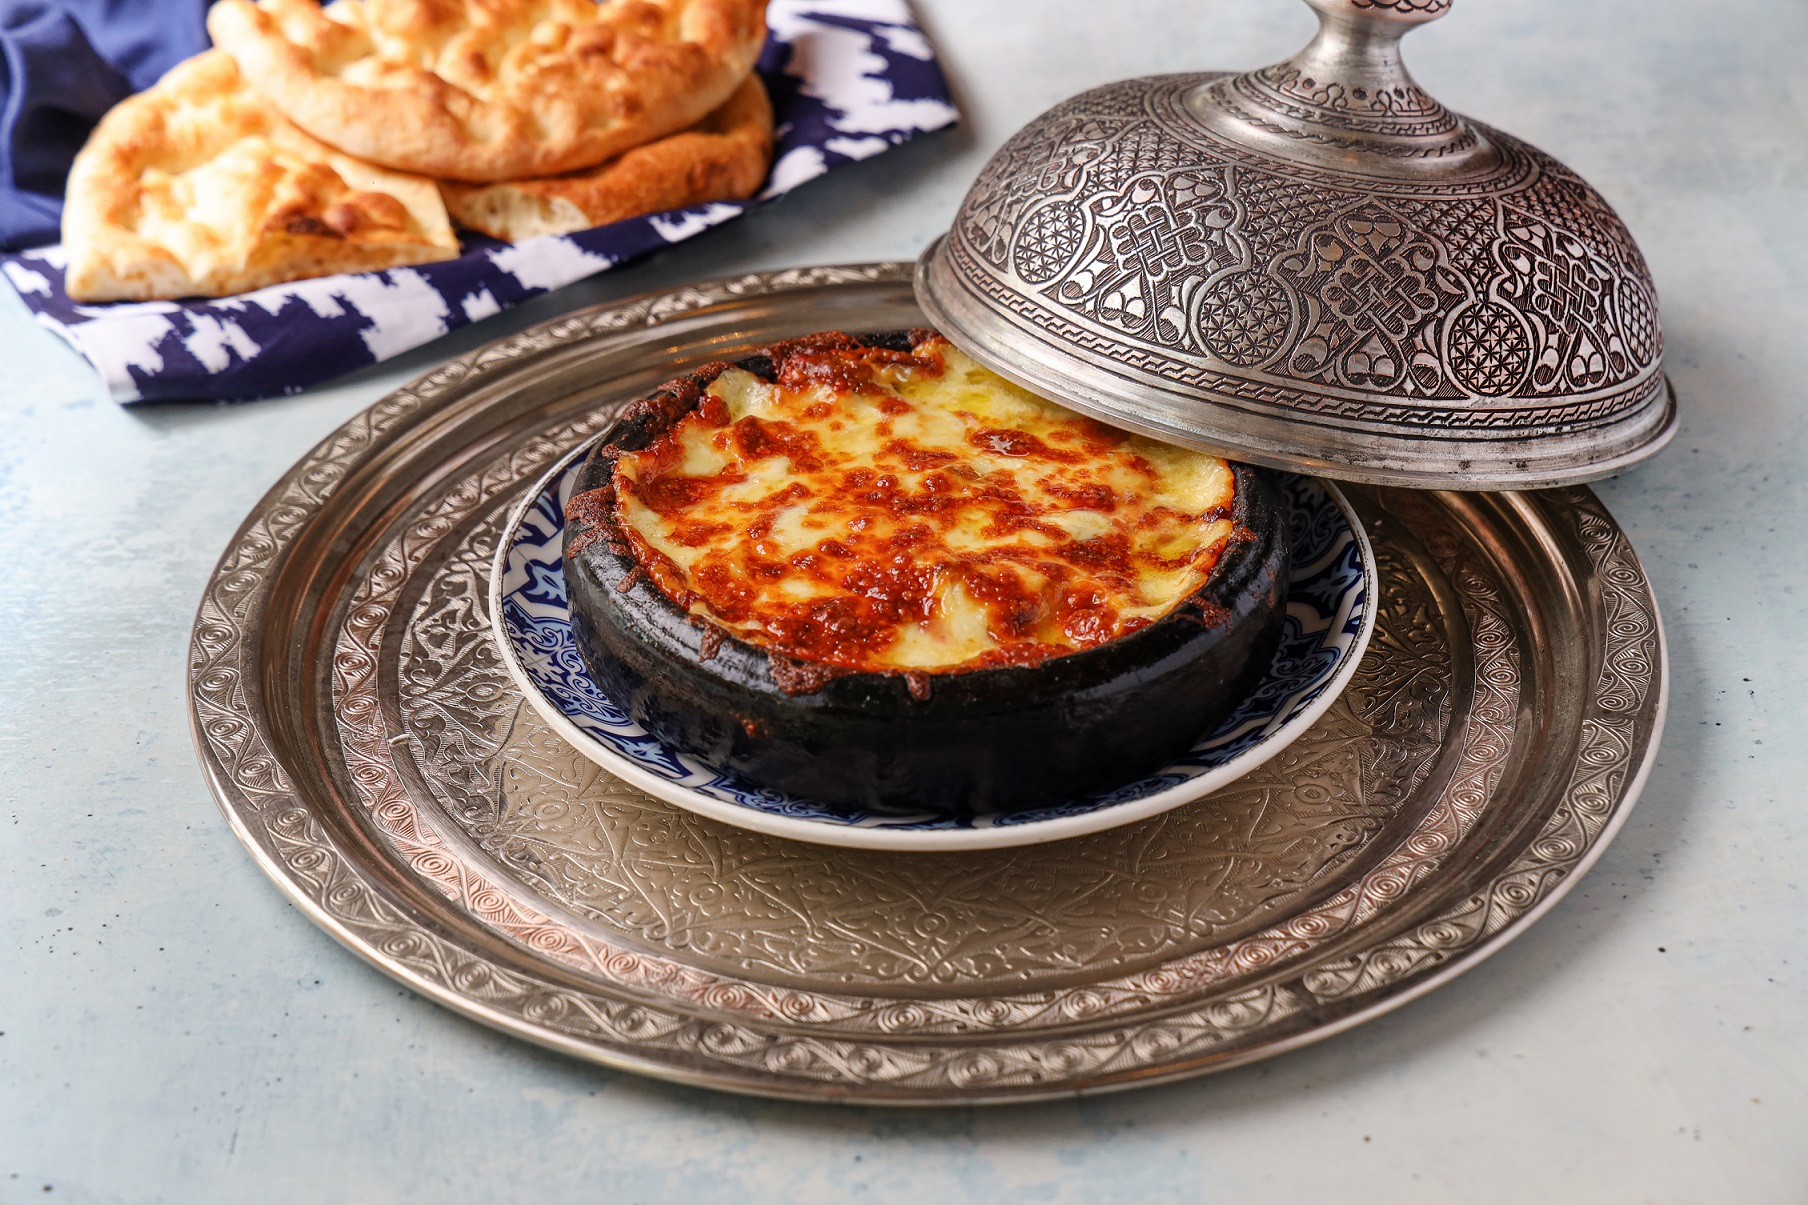 مطعم باباجي تقدم باقة جديدة من الأطباق التركية الأسبوعية الخاصّة